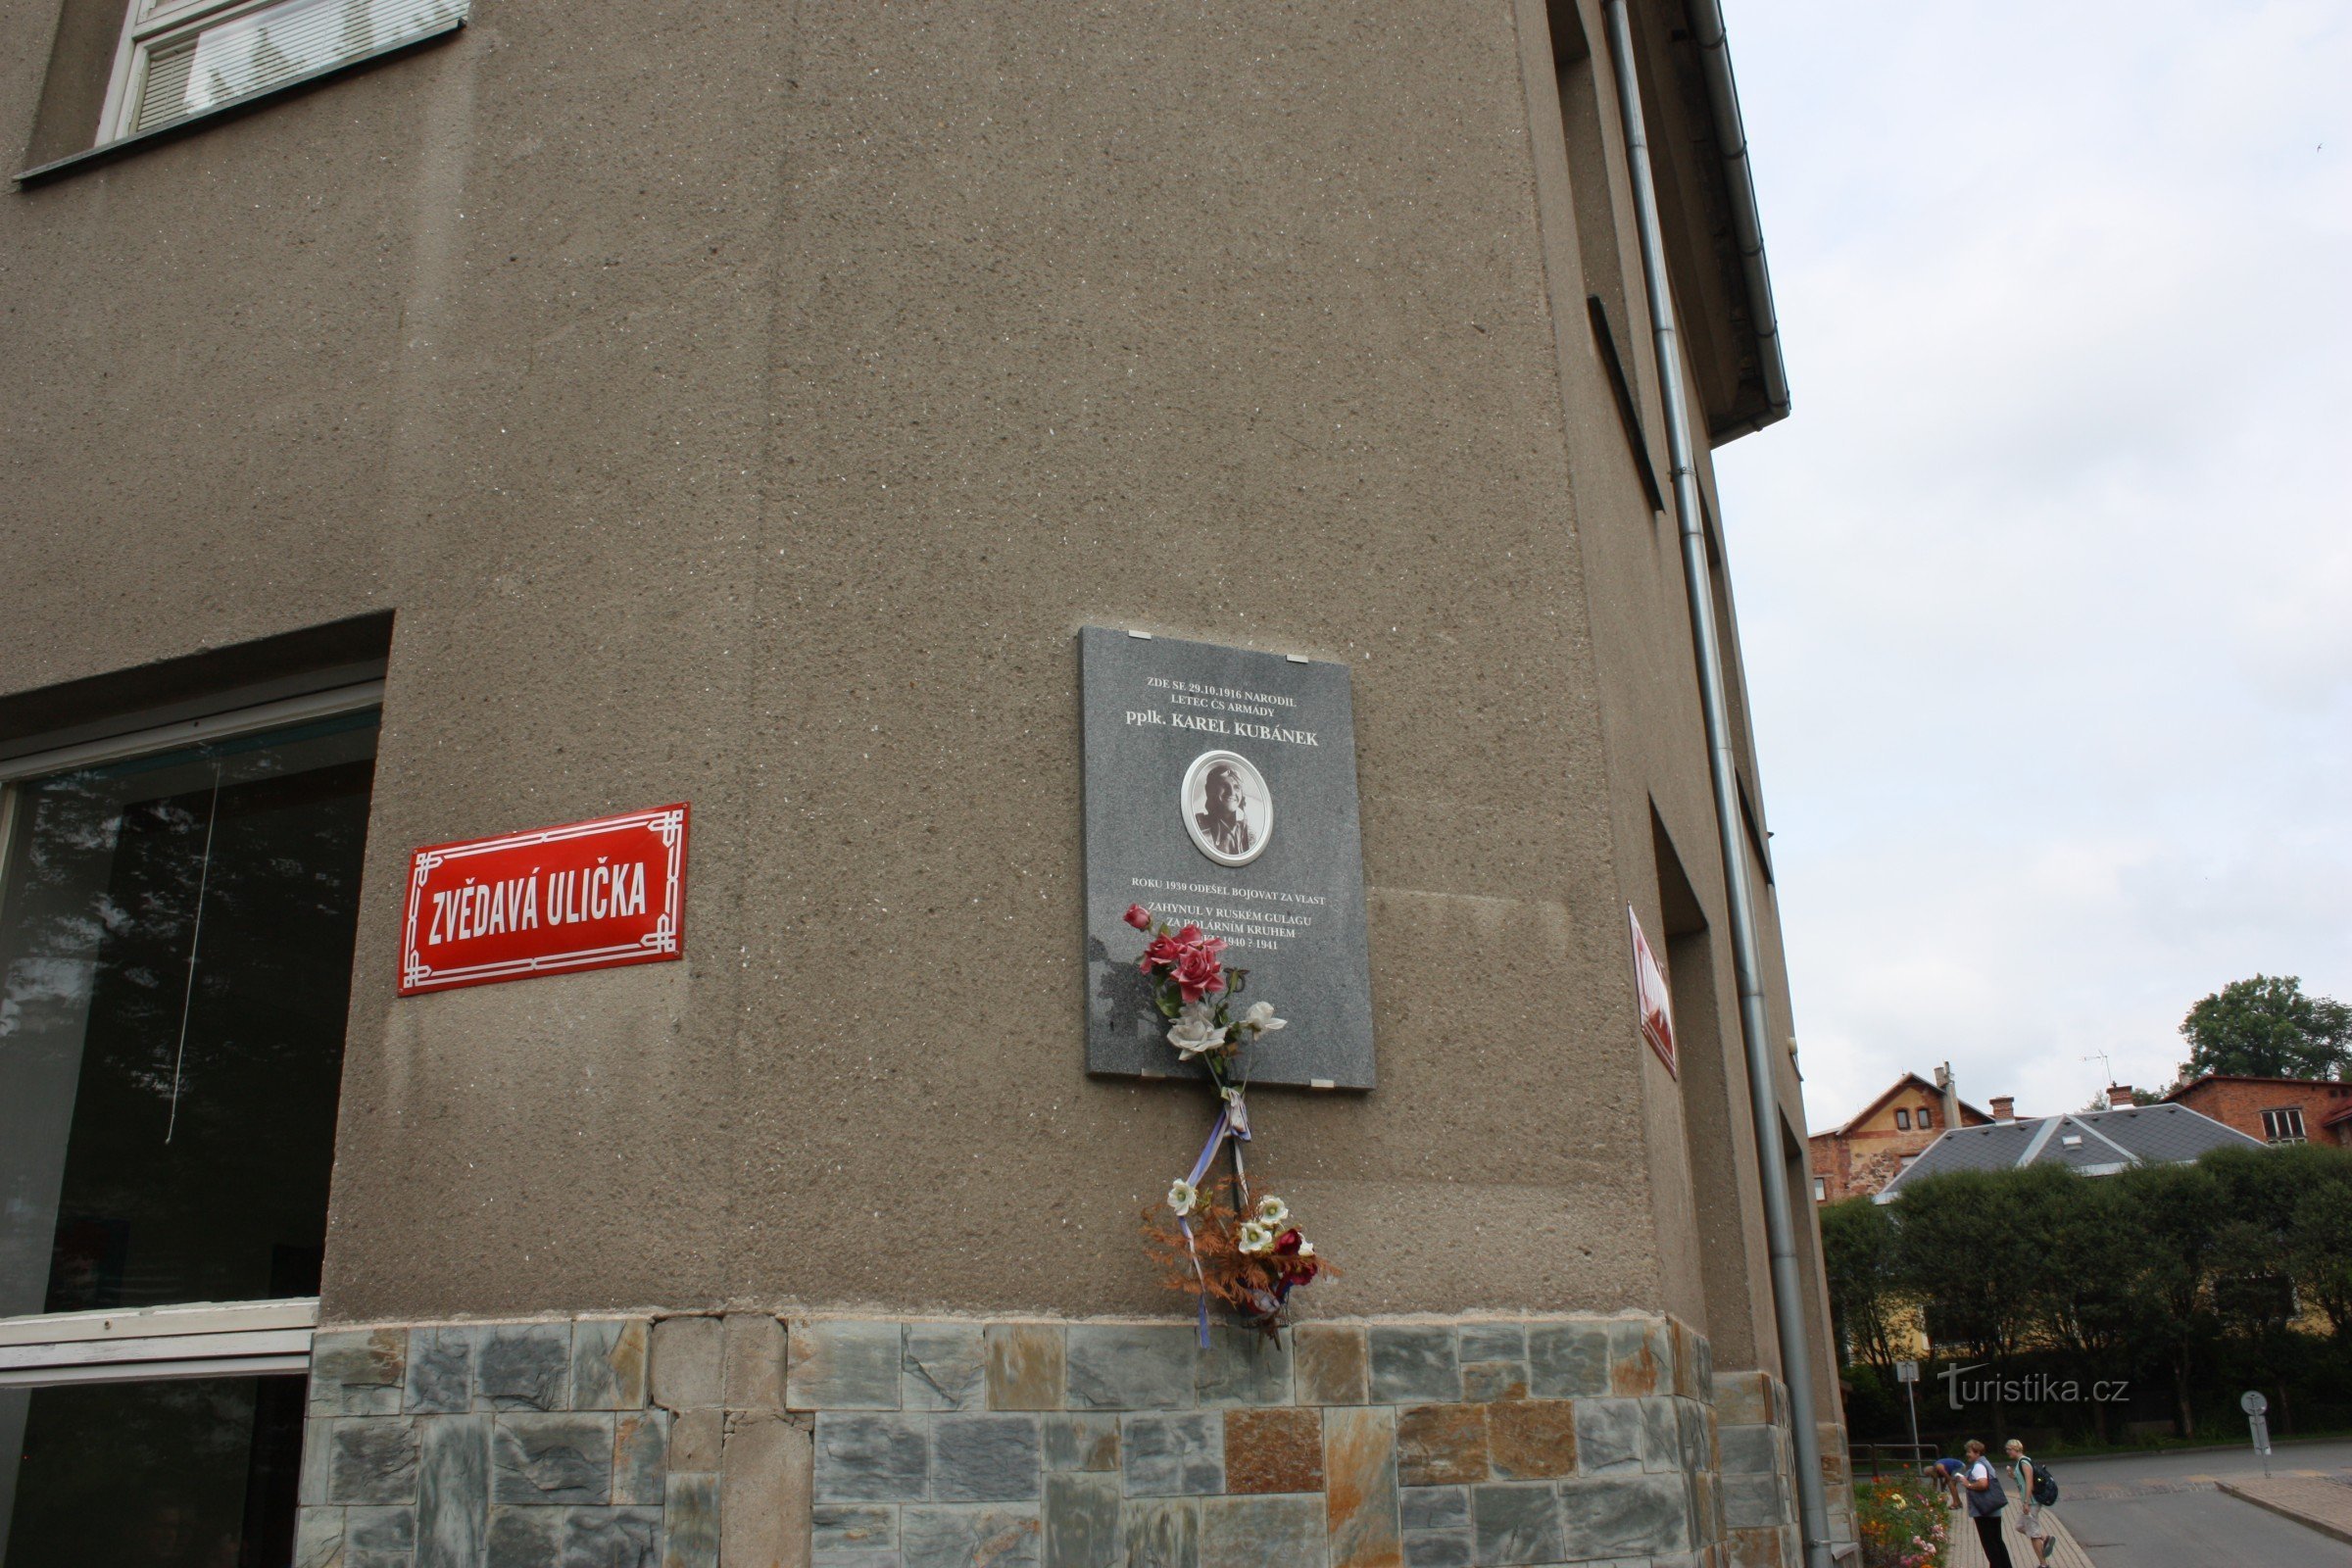 Tablica pamiątkowa na rogu ulicy Zvědavá ulička w Jilemnica